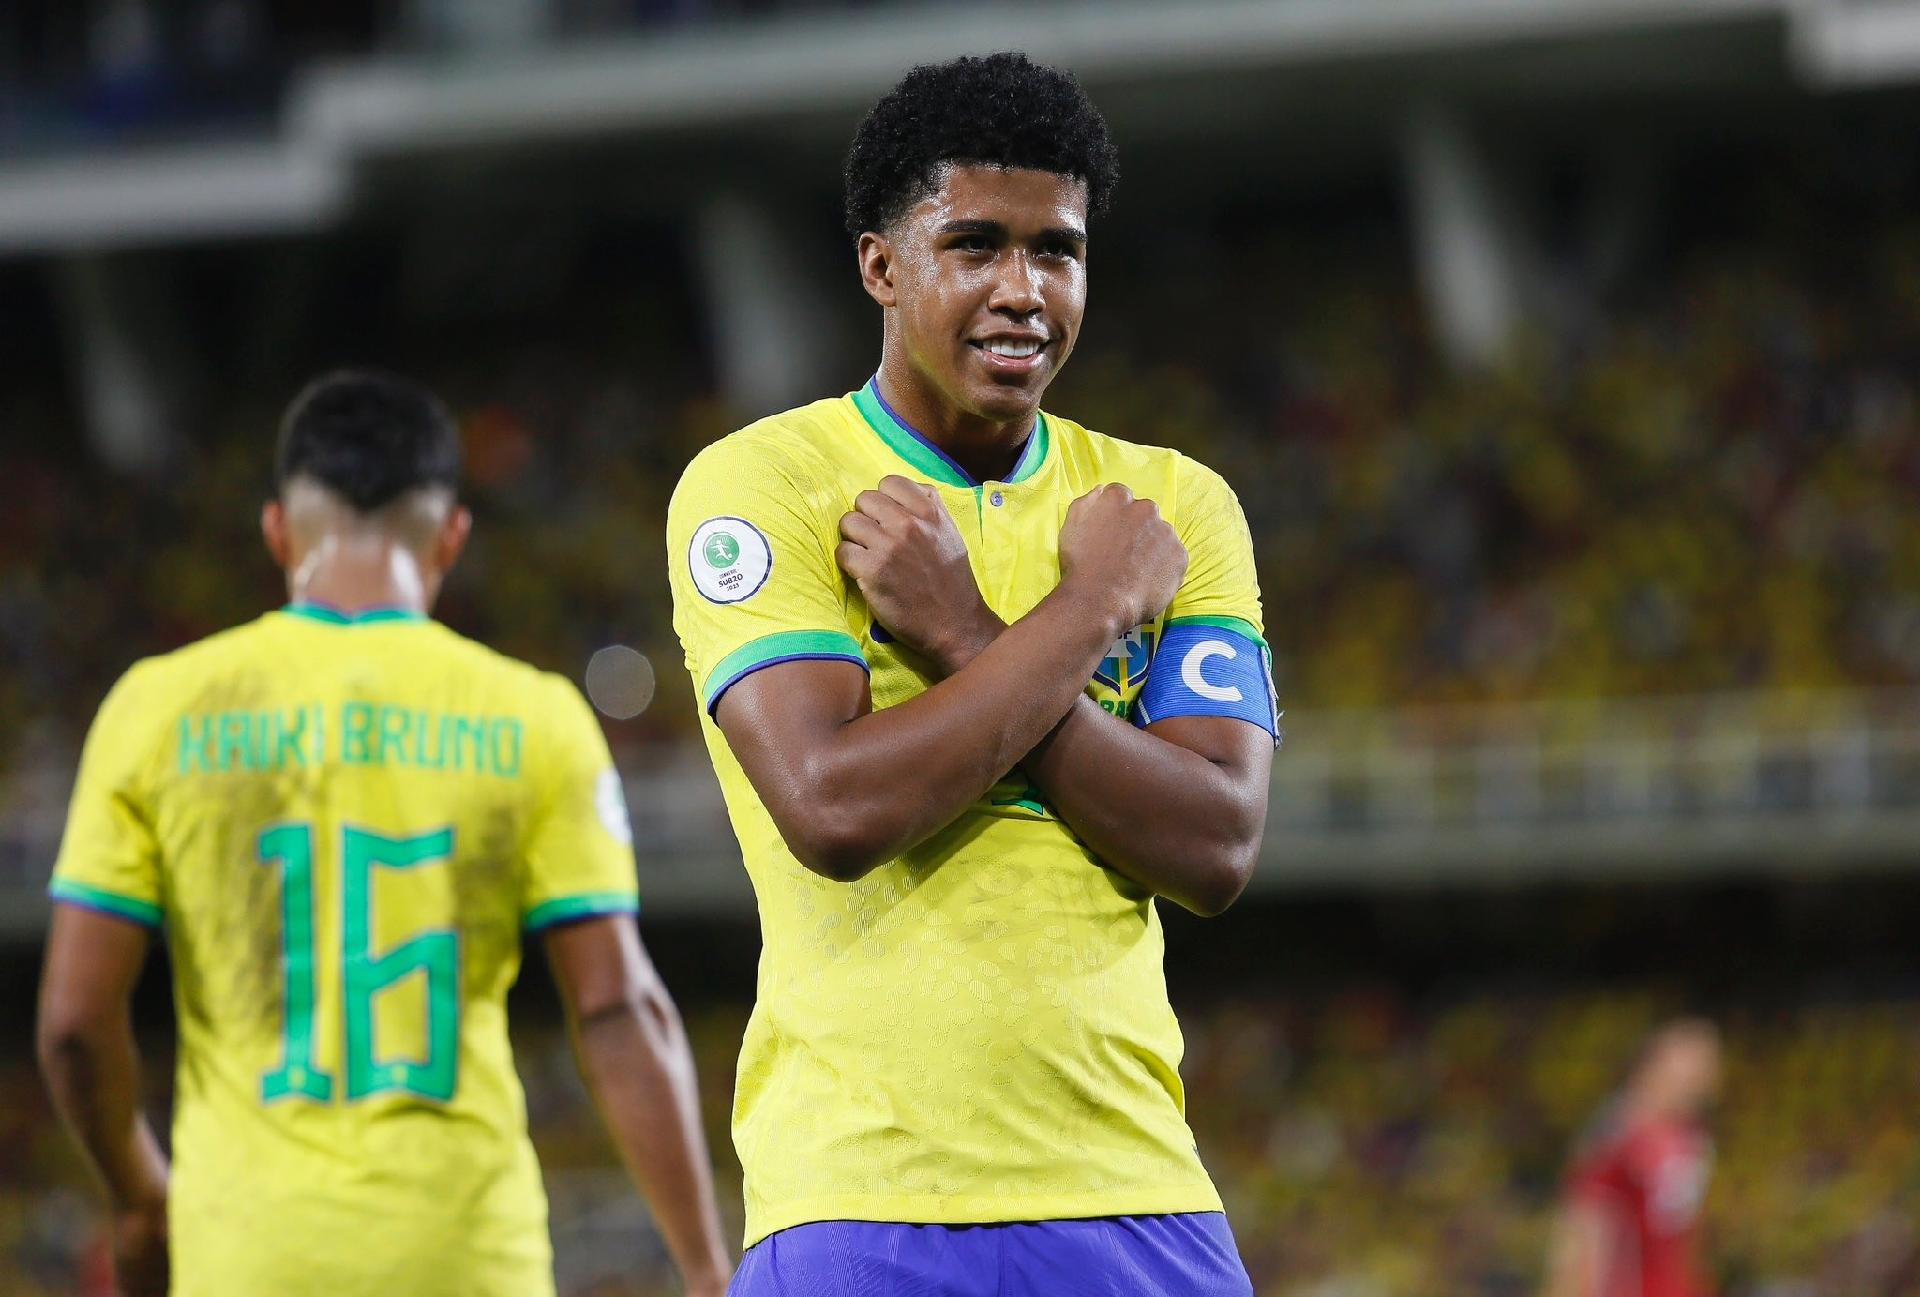 Já classificado, Brasil empata com a Colômbia no Sul-Americano Sub